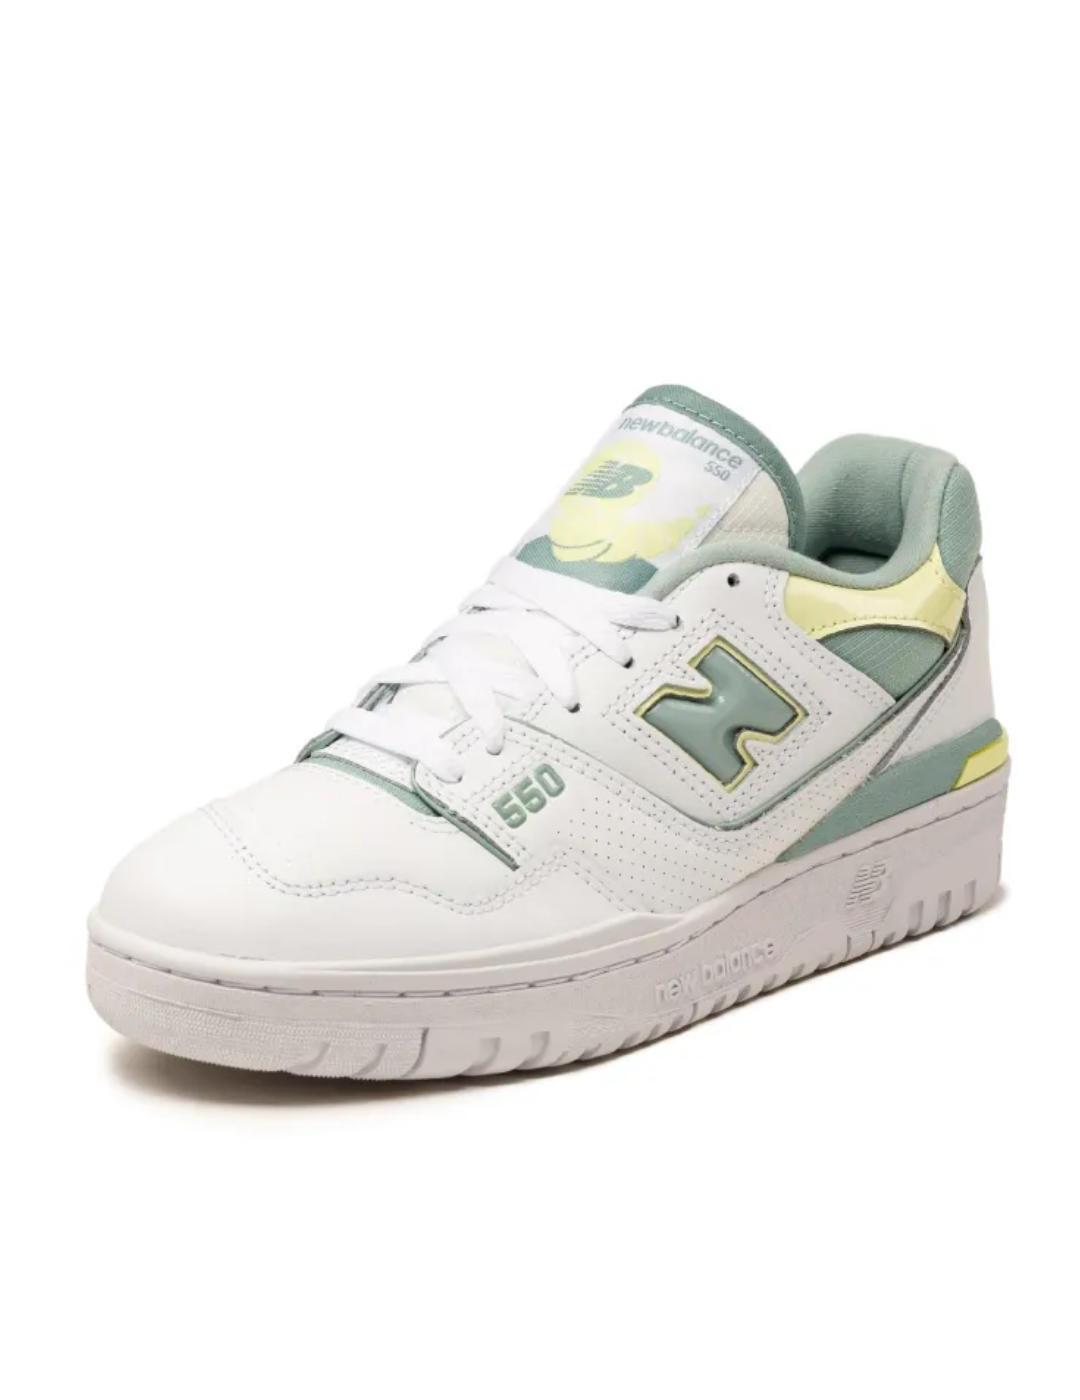 Zapatillas New Balance 550 blanca y verde mujer-NE